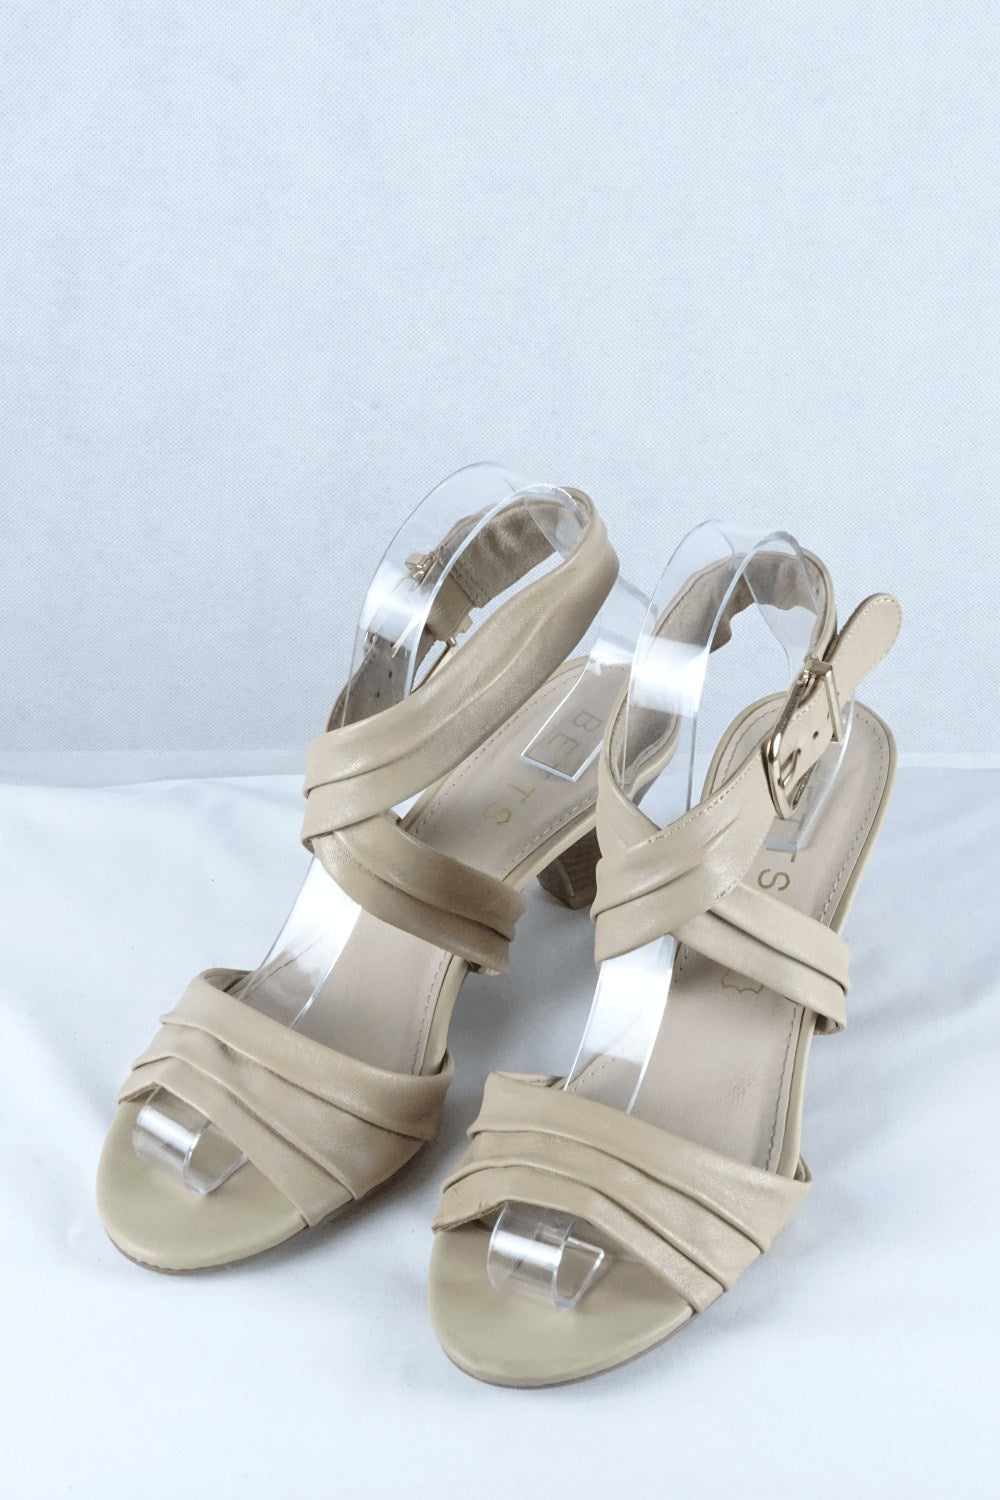 Betts Ivory Shoes 7 AU